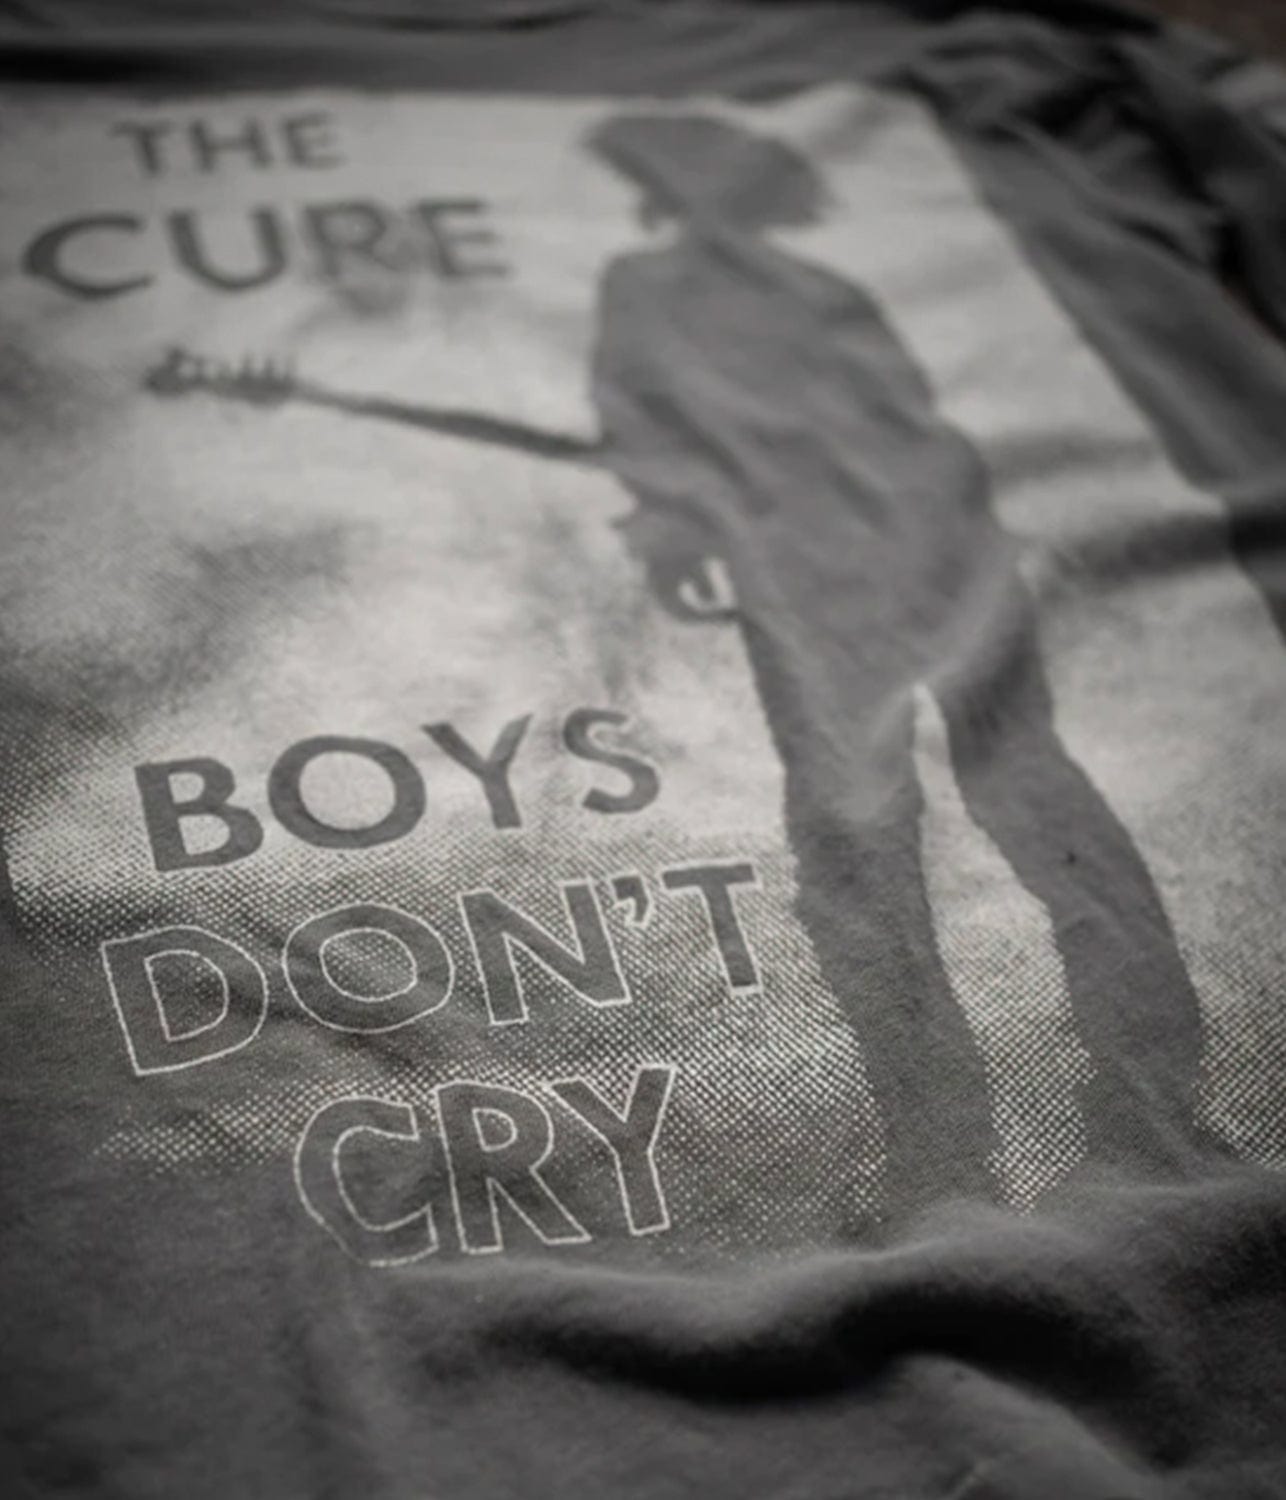 THE CURE BOYS DON'T CRY LONG SLEEVE TEE- COAL | MADE WORN |  MADE WORN THE CURE BOYS DON'T CRY LONG SLEEVE TEE- DUSK